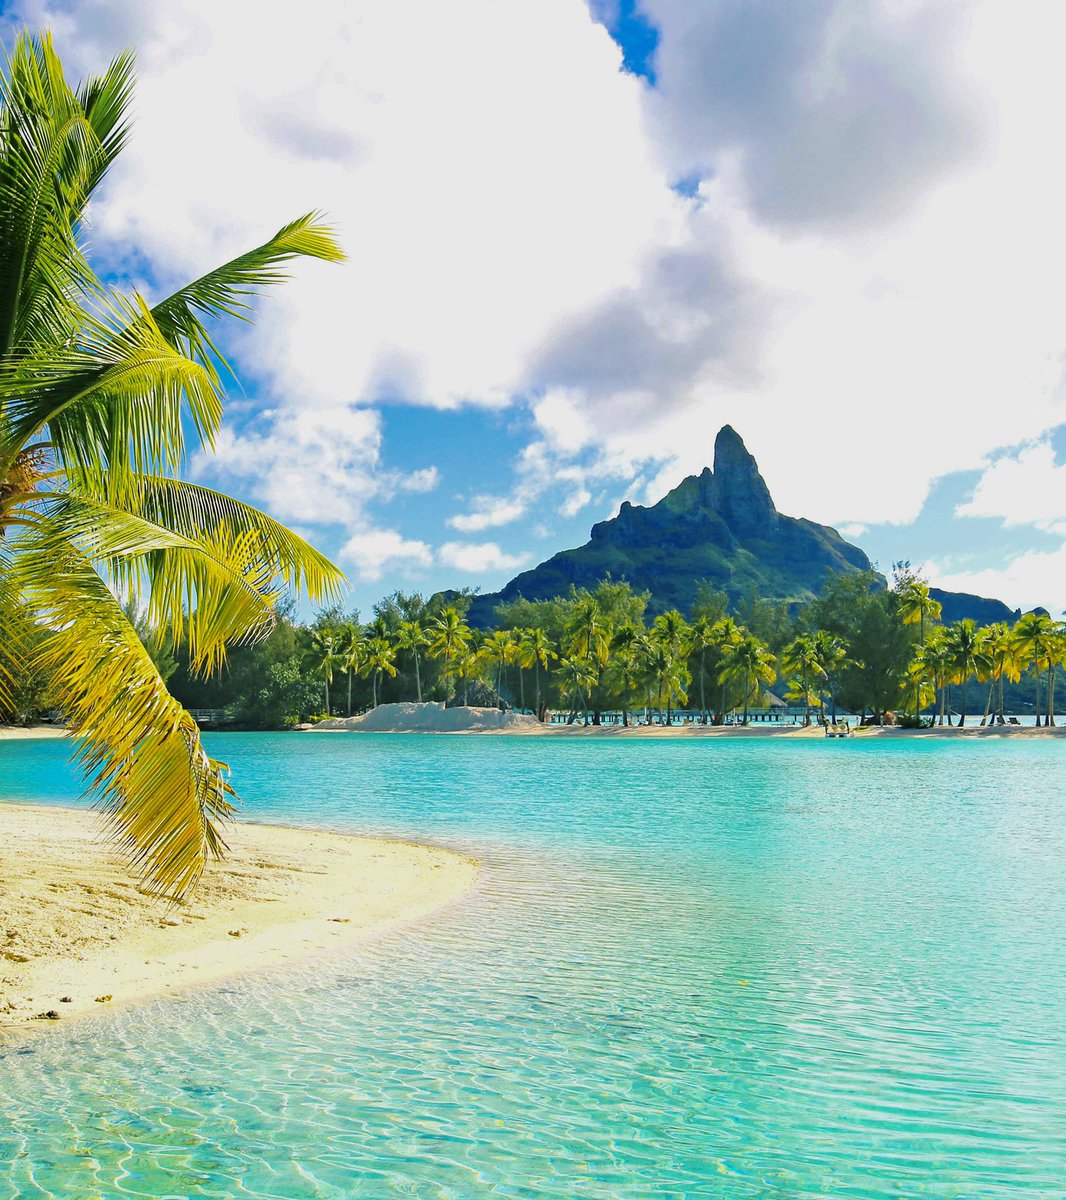 Bora Bora, French Polynesia 🇵🇫